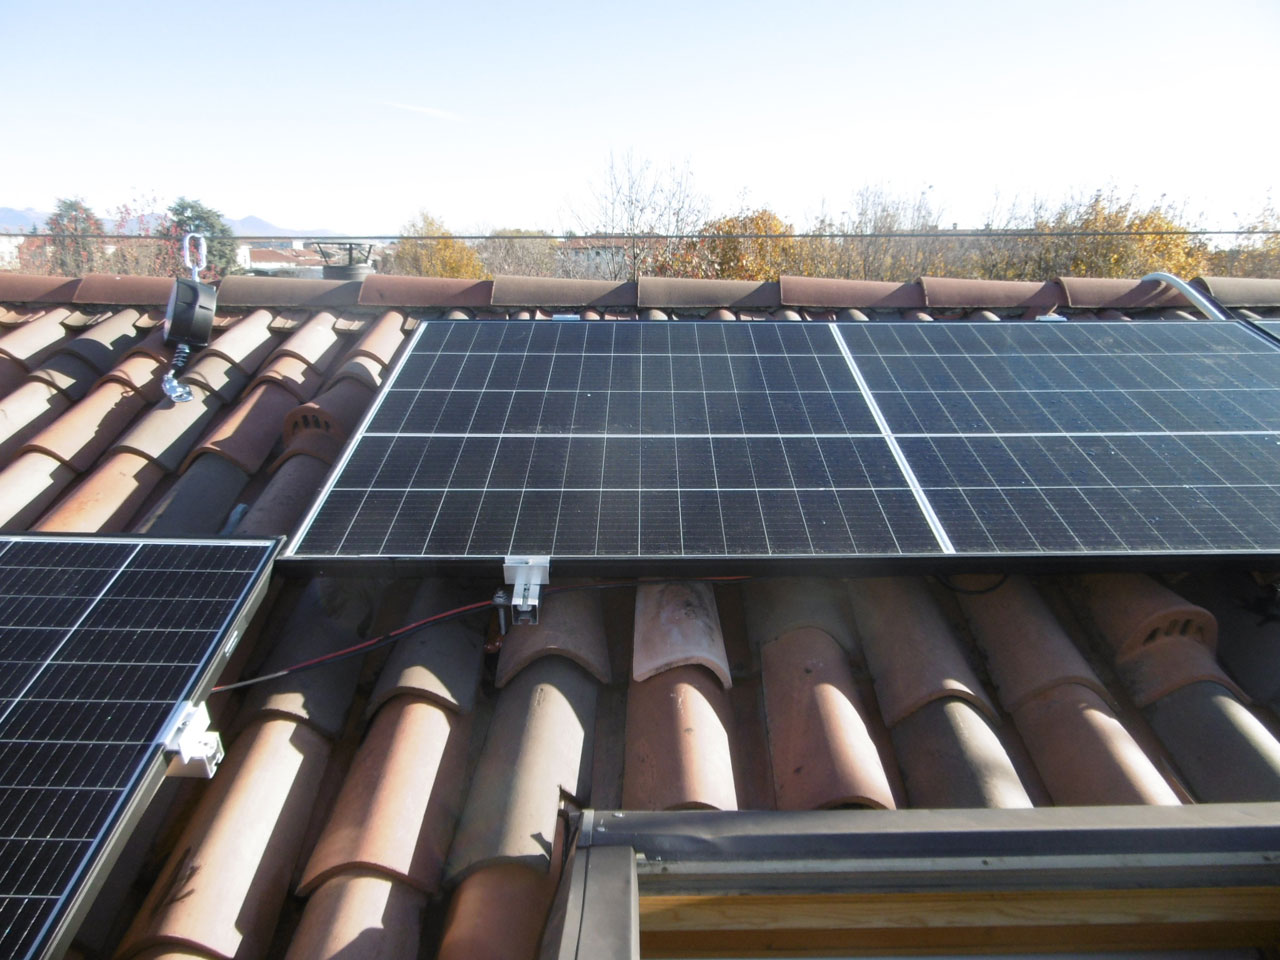 Patologie impianti fotovoltaici: installazioni su coperture non sempre efficaci impianto fotovoltaico installato sopra copertura